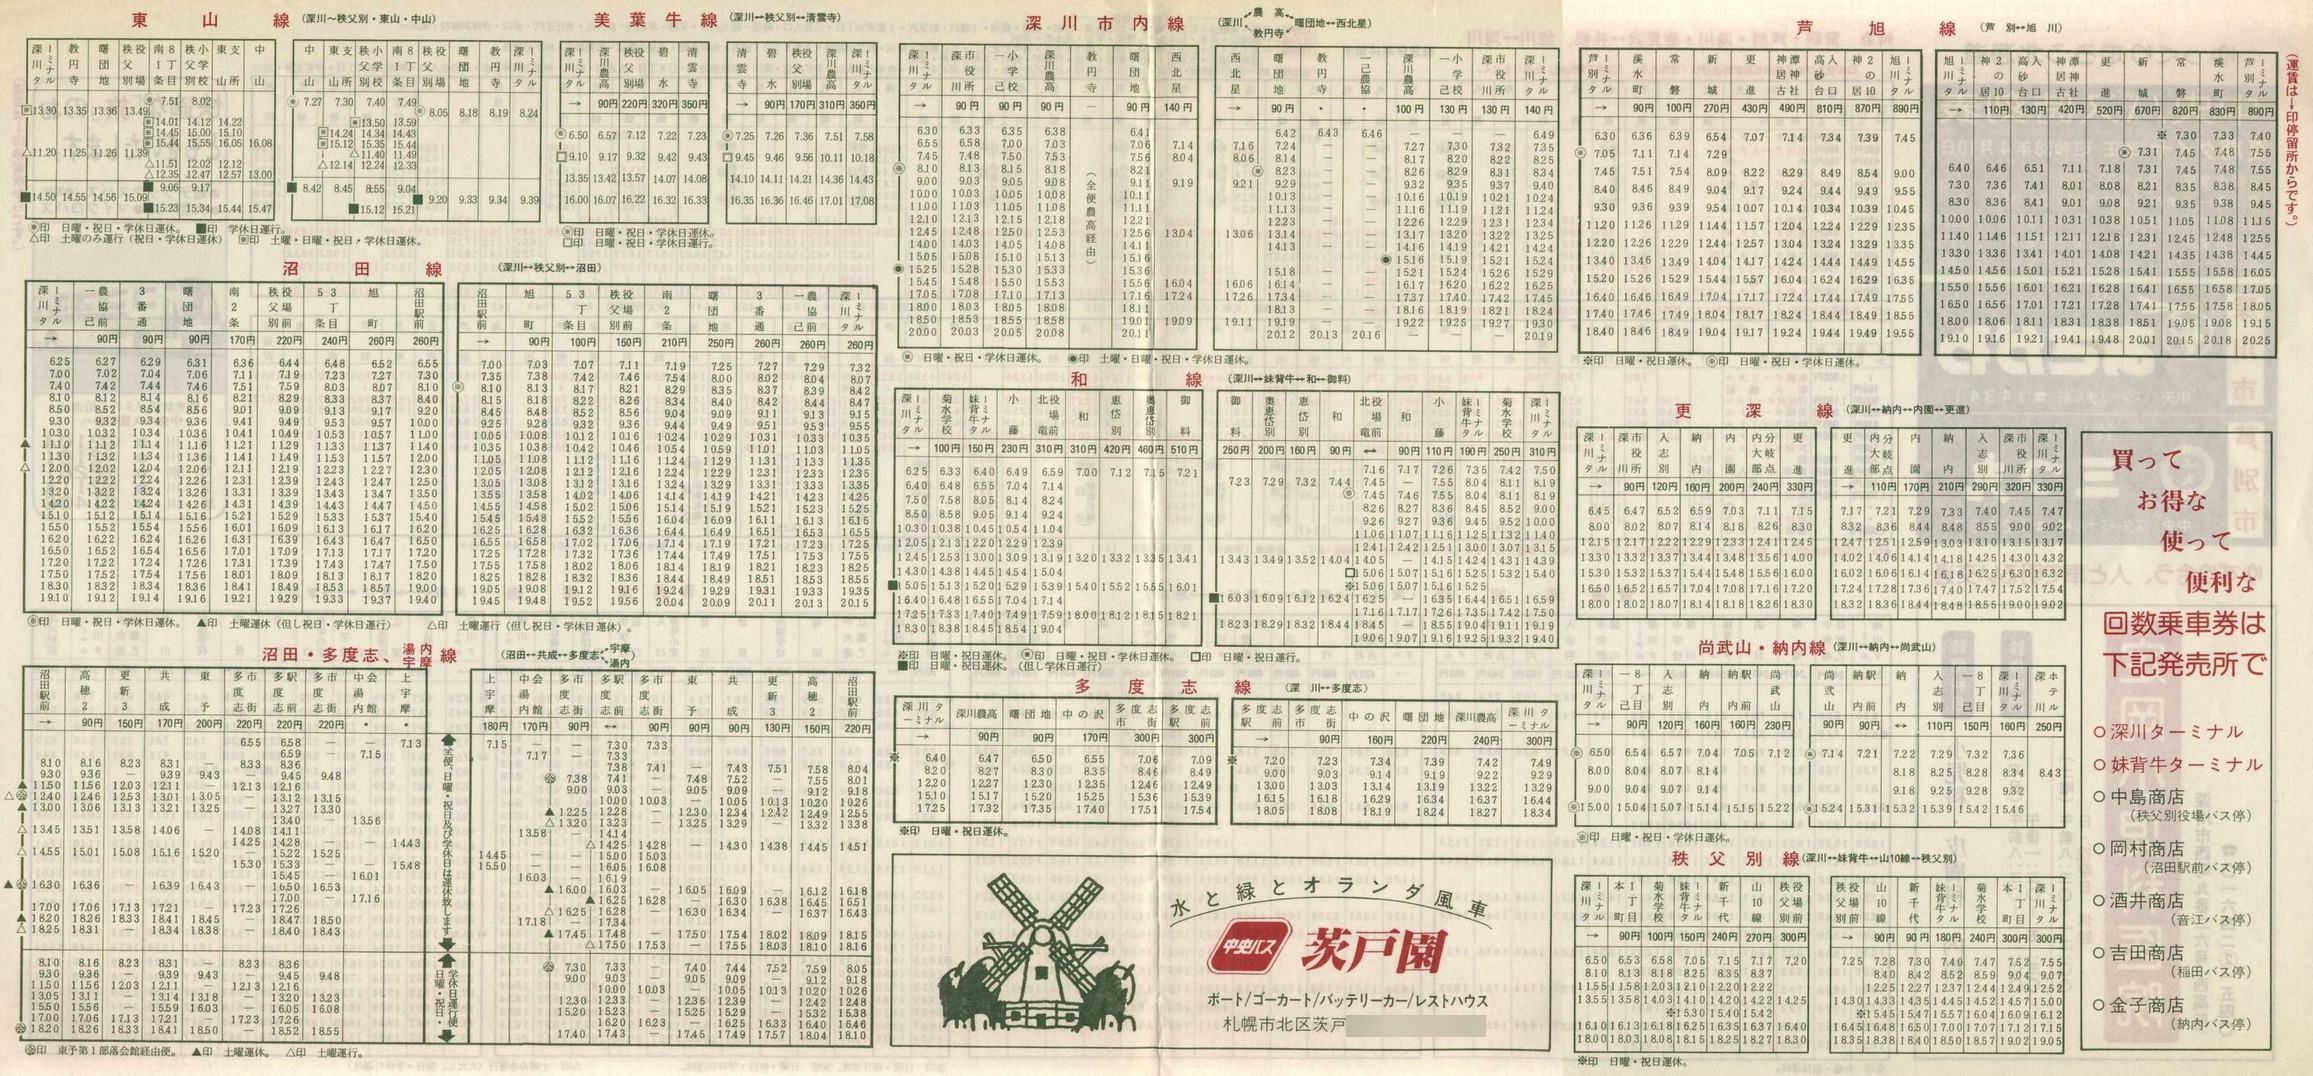 1983-04-10改正_北海道中央バス(空知)_深川・旭川地区時刻表裏面